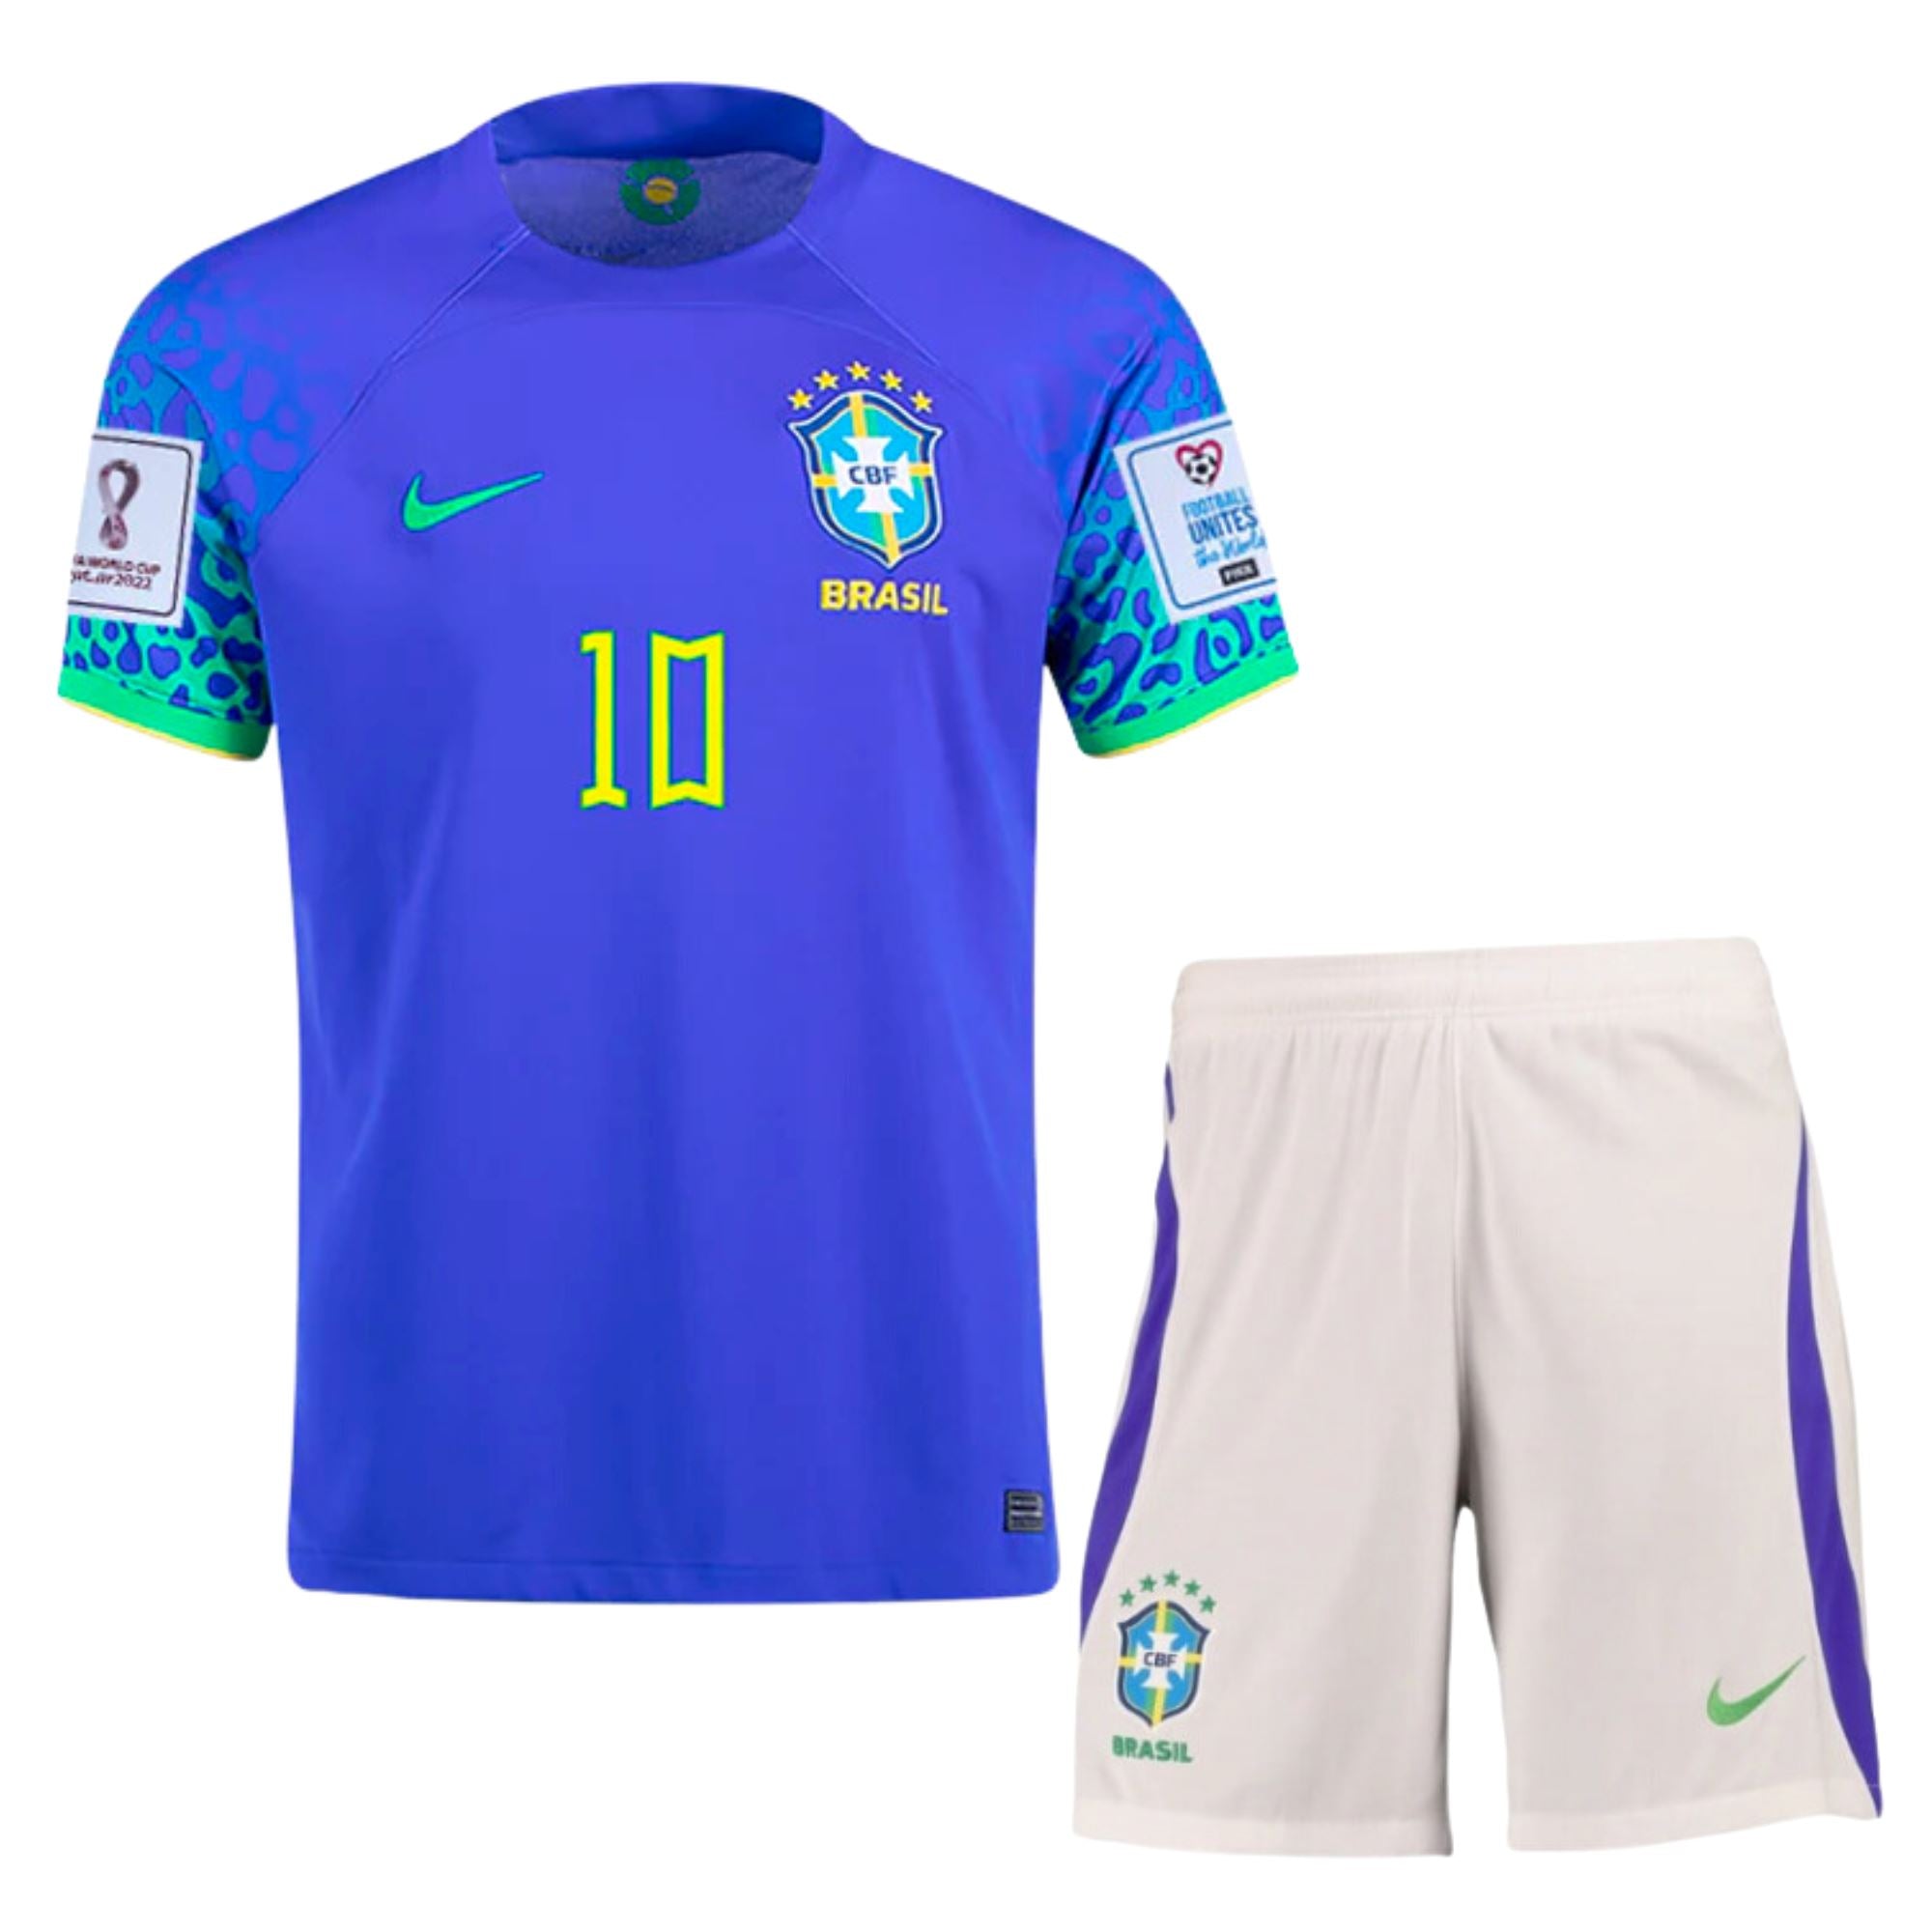 brazil jersey,brazil football jersey,brazil tshirt for kids,brazil football  jersey for boys,brazil jersey neymar,brazil away jersey,brazil away